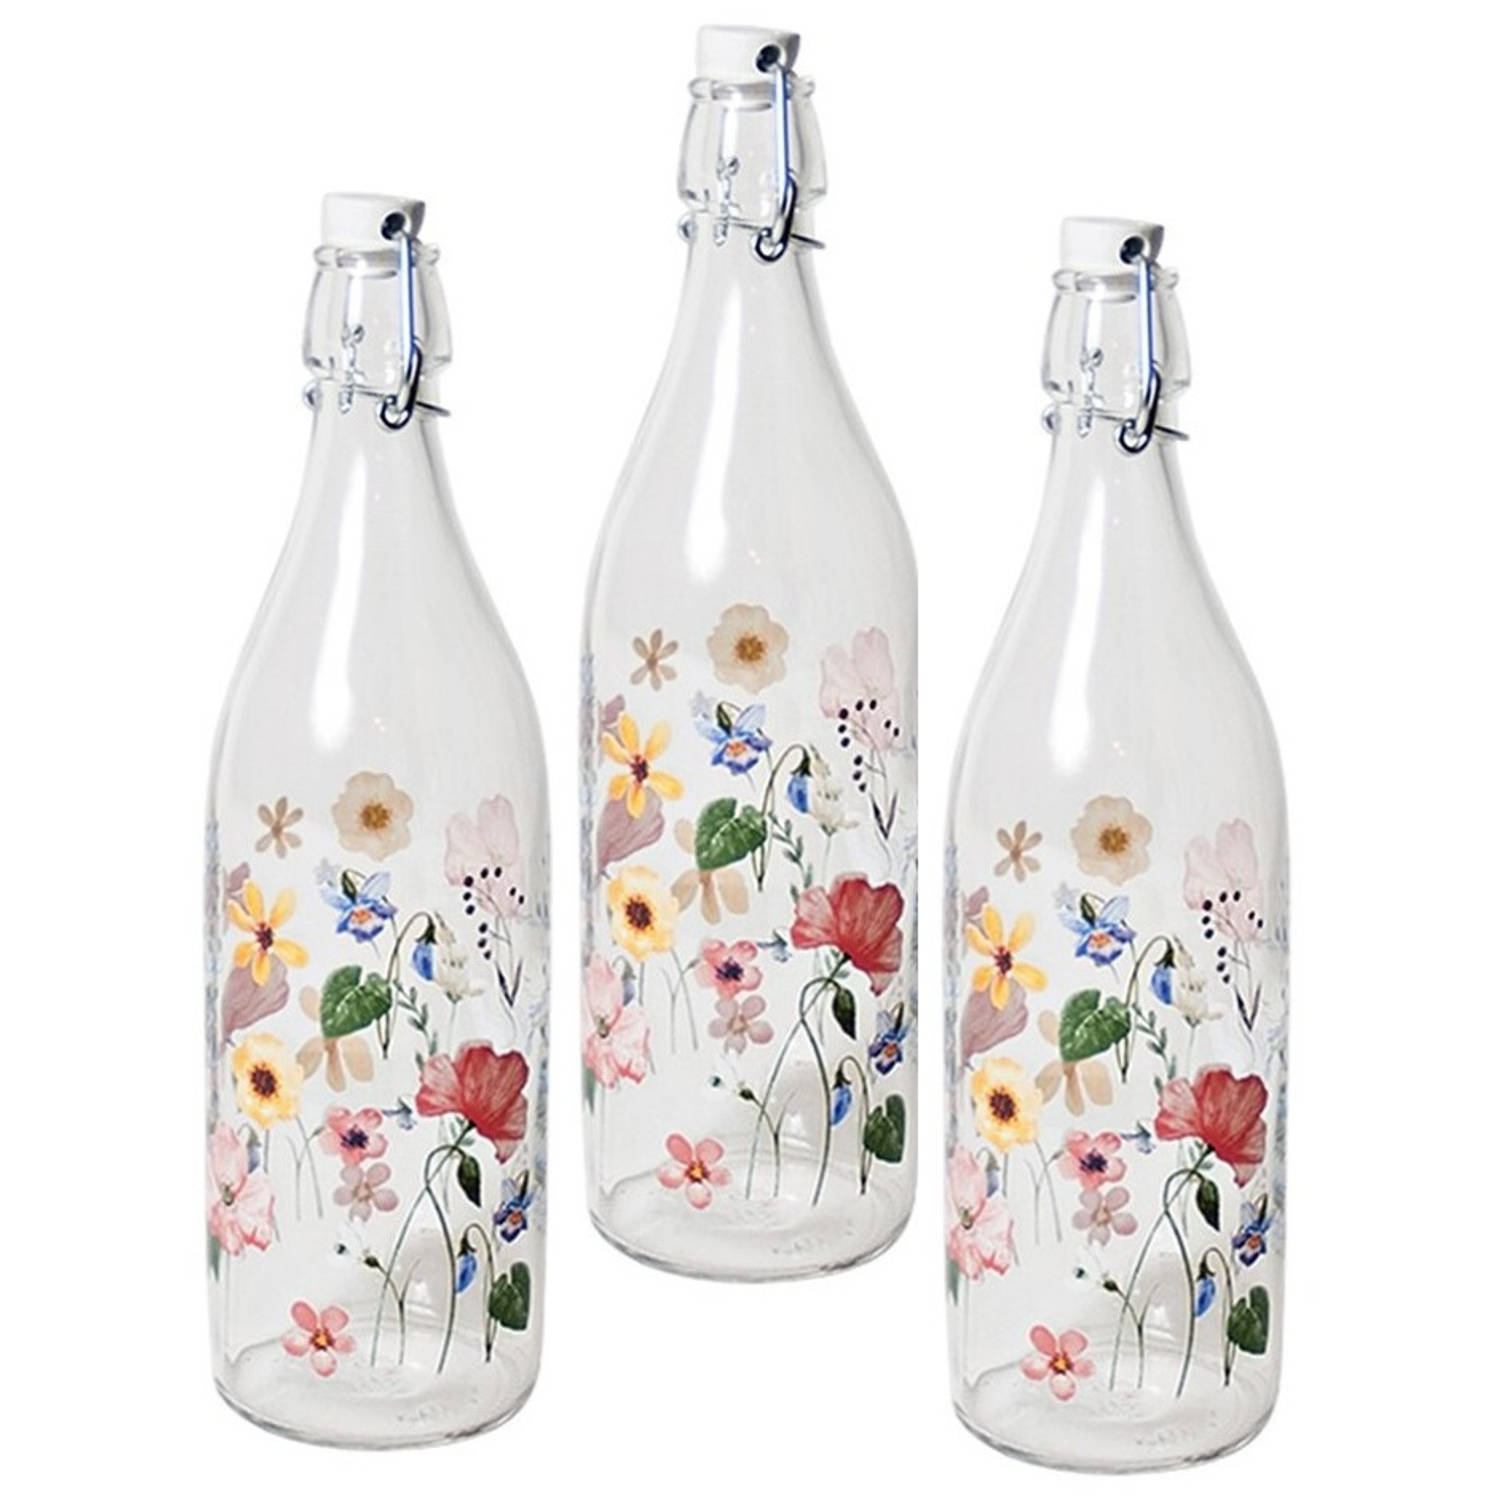 12x Glazen Beugelflessen/weckflessen Bloemenprint Met Beugeldop 1 Liter - Decoratieve Flessen